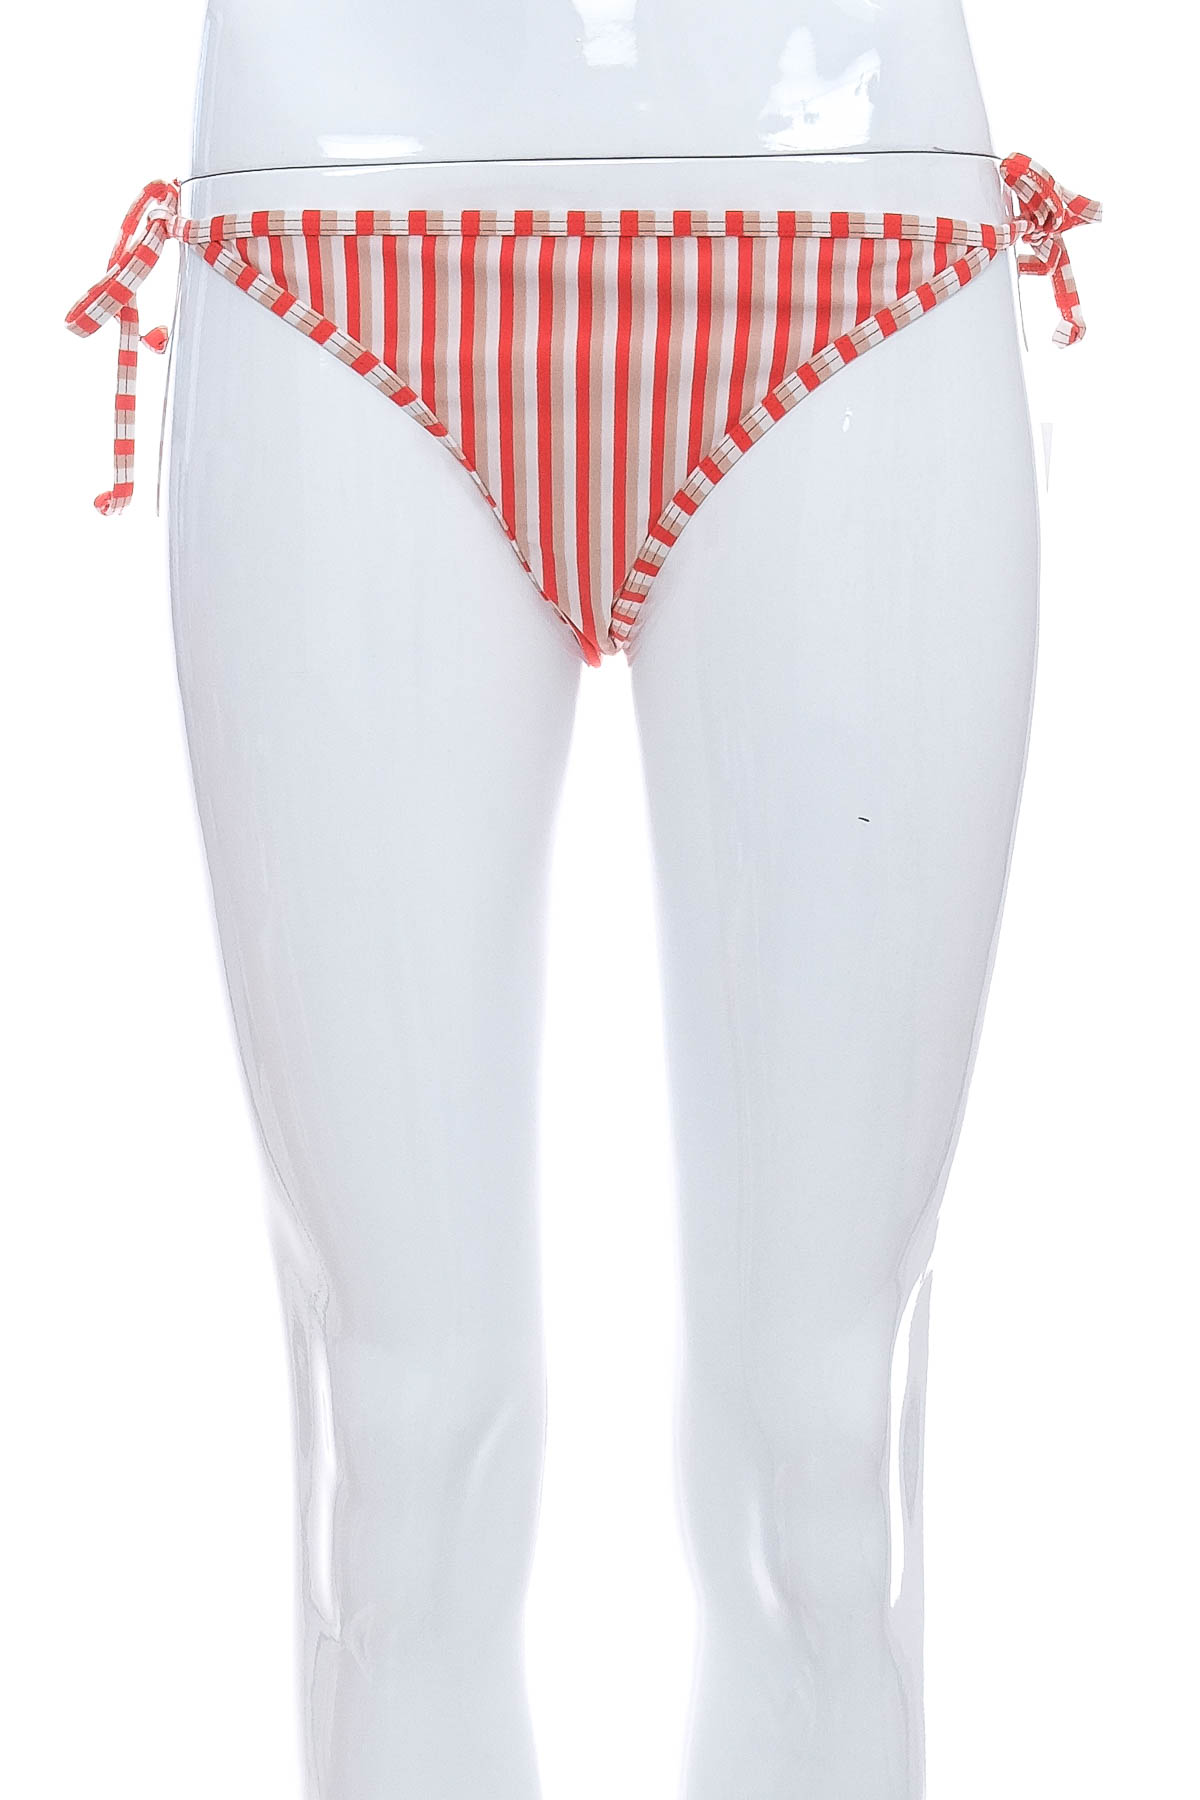 Women's swimsuit bottoms - Y.A.S - 0